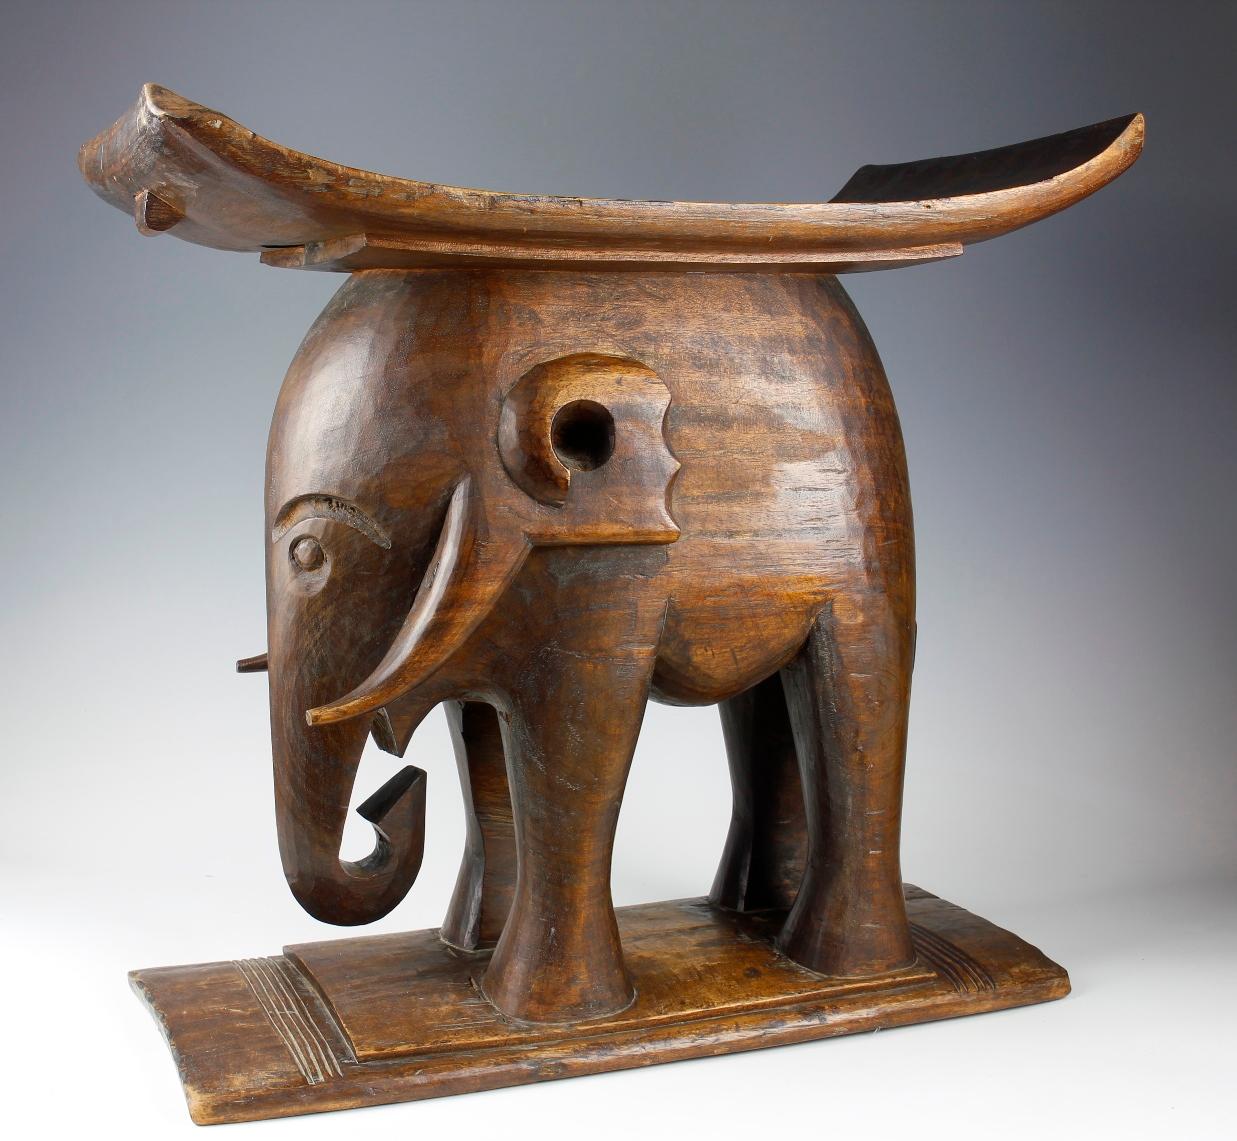 Dieser schöne frühe Hocker aus der Ashanti-Kultur in Ghana stellt einen Elefanten dar - ein Symbol der Ashanti für Macht und Stärke. Dieser große, beeindruckende Hocker, der aus schwerem, braunem Holz geschnitzt ist, hatte neben seinem funktionalen